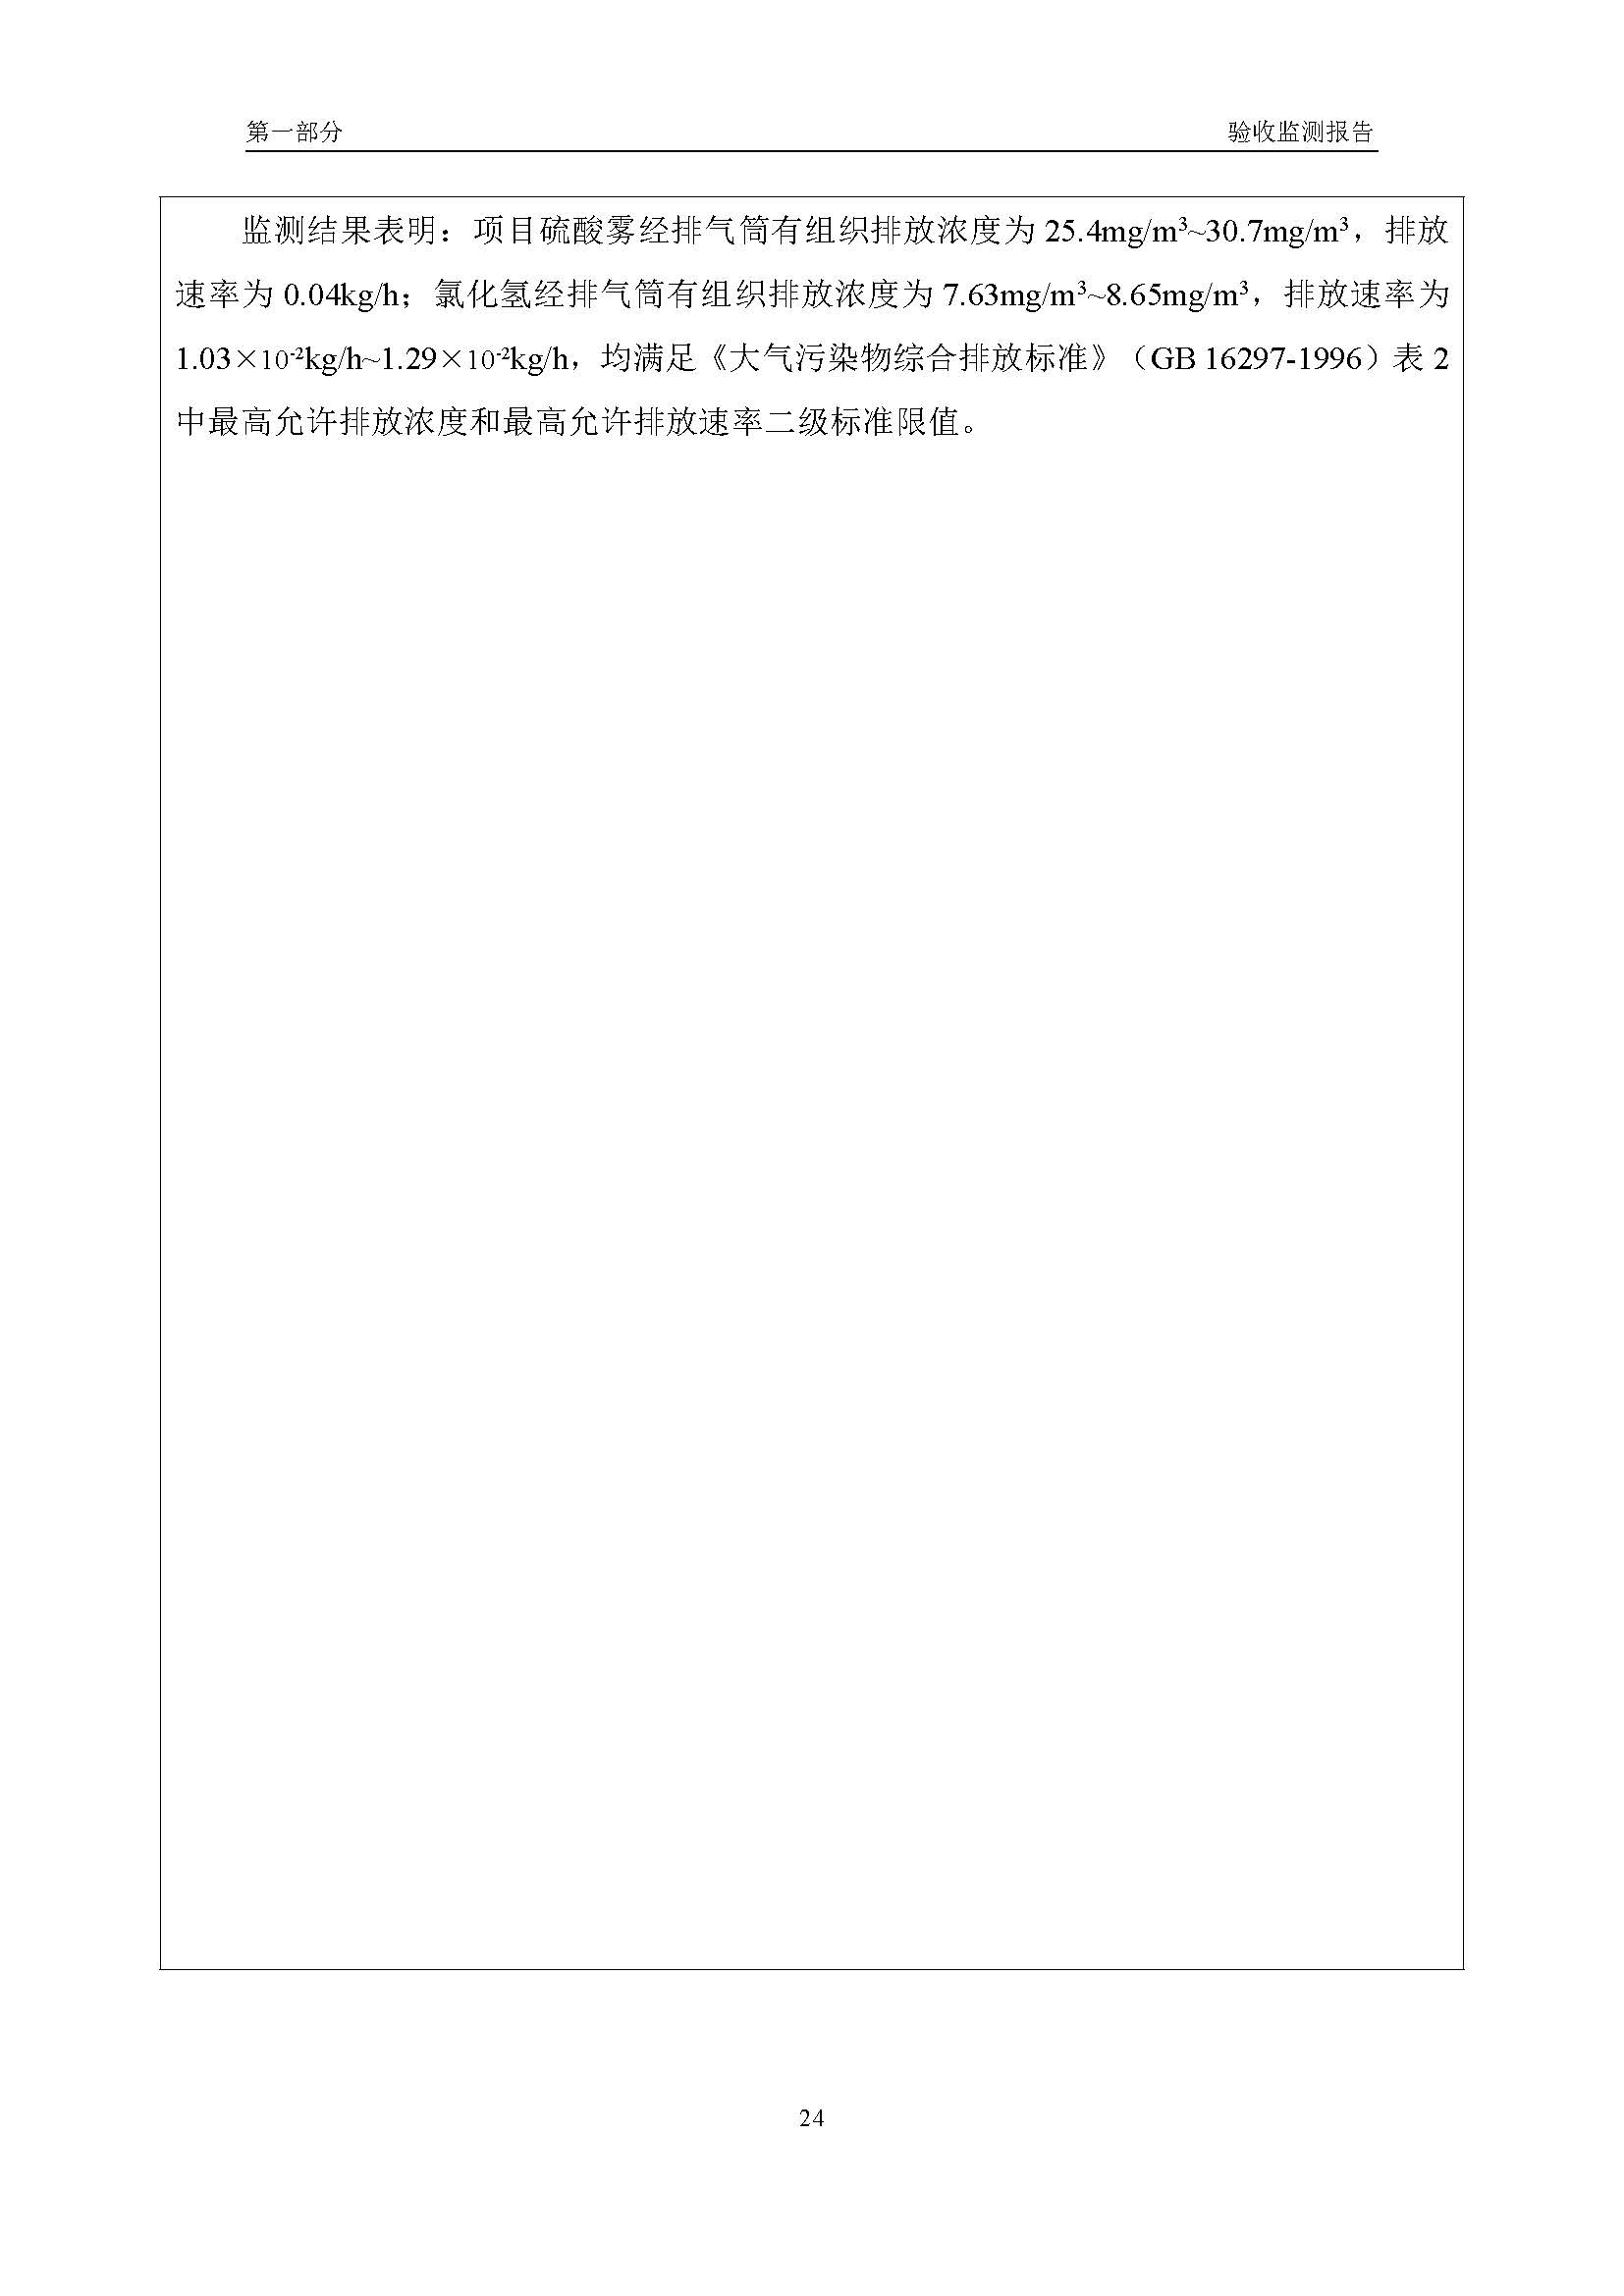 汉正检测环评验收报告 2018.05.31_页面_26.jpg